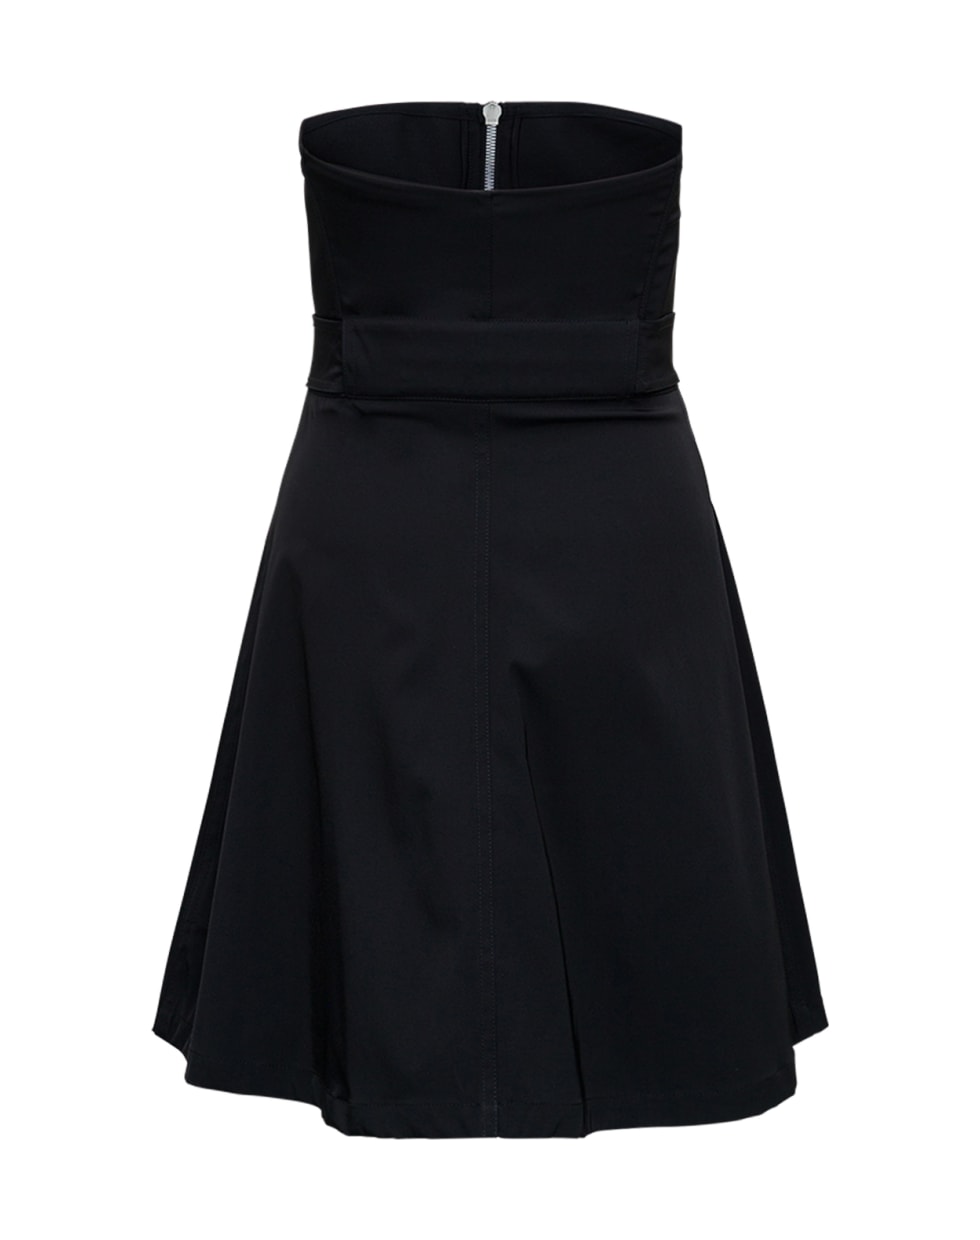 Bottega Veneta Sleeveless Stretch Nylon Dress With Belt - Black